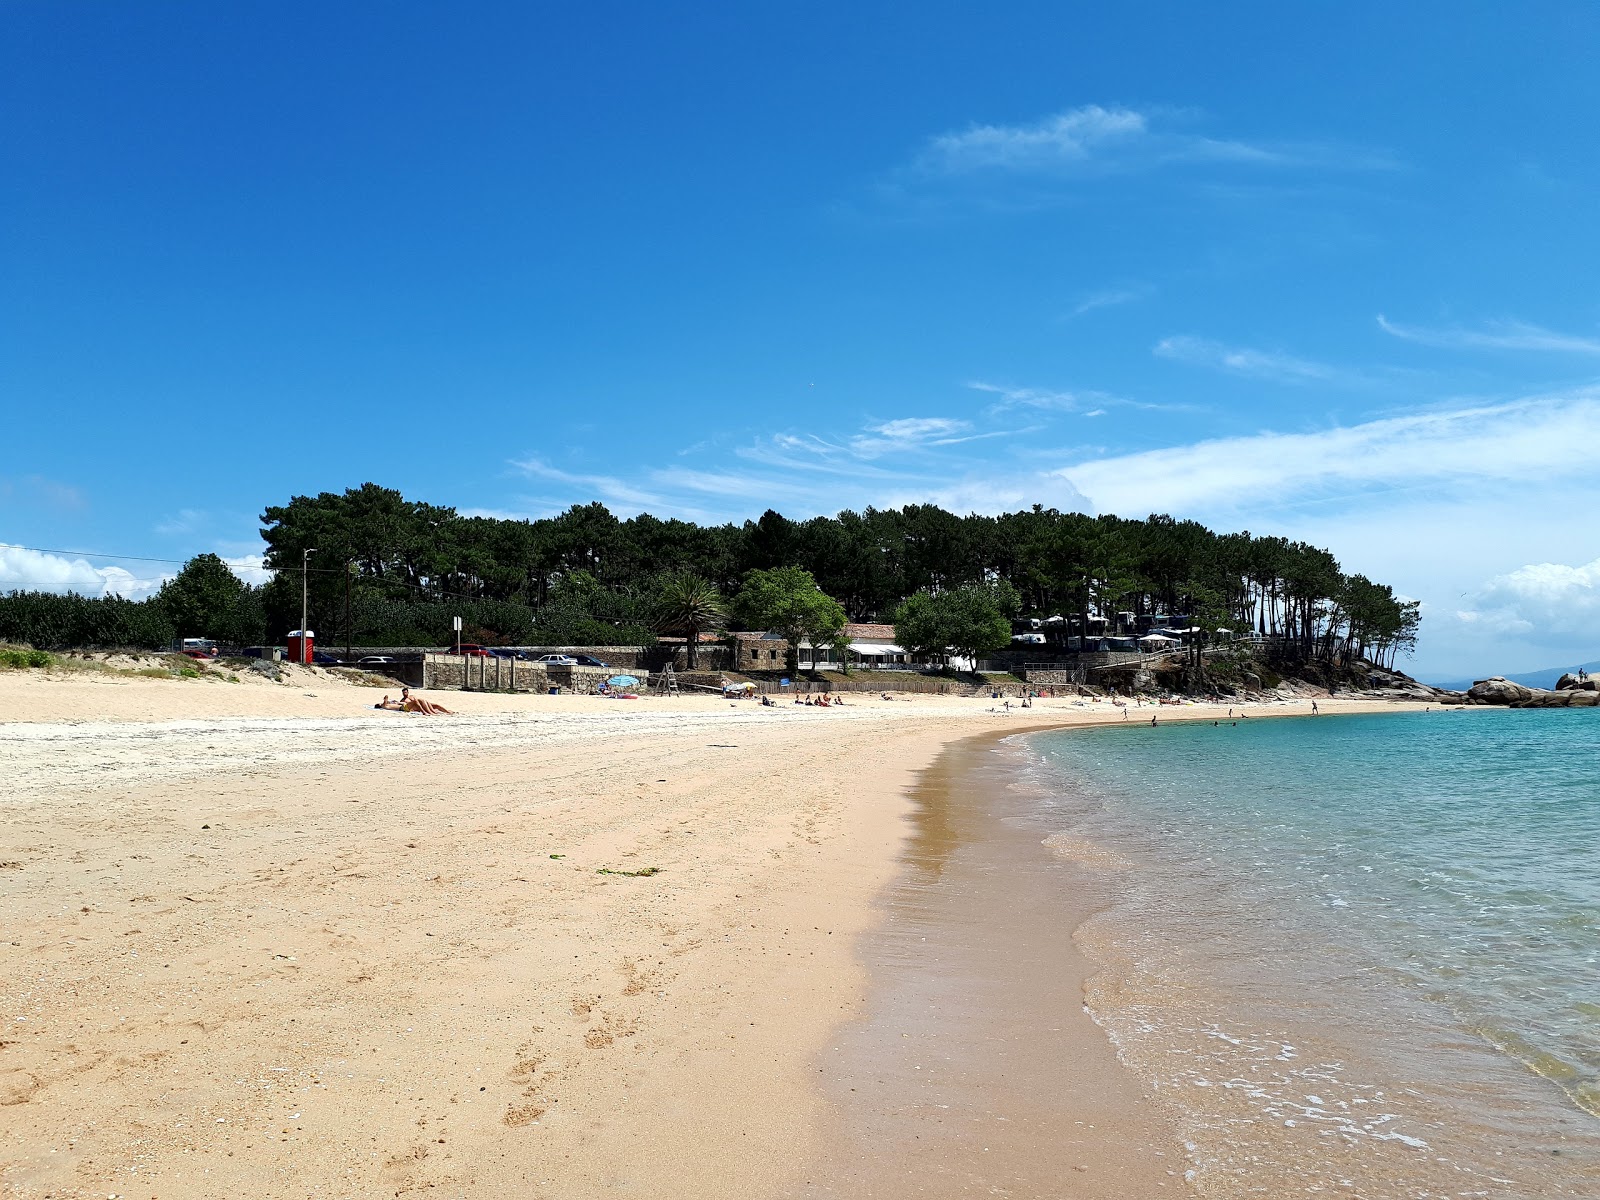 Coroso beach'in fotoğrafı geniş plaj ile birlikte